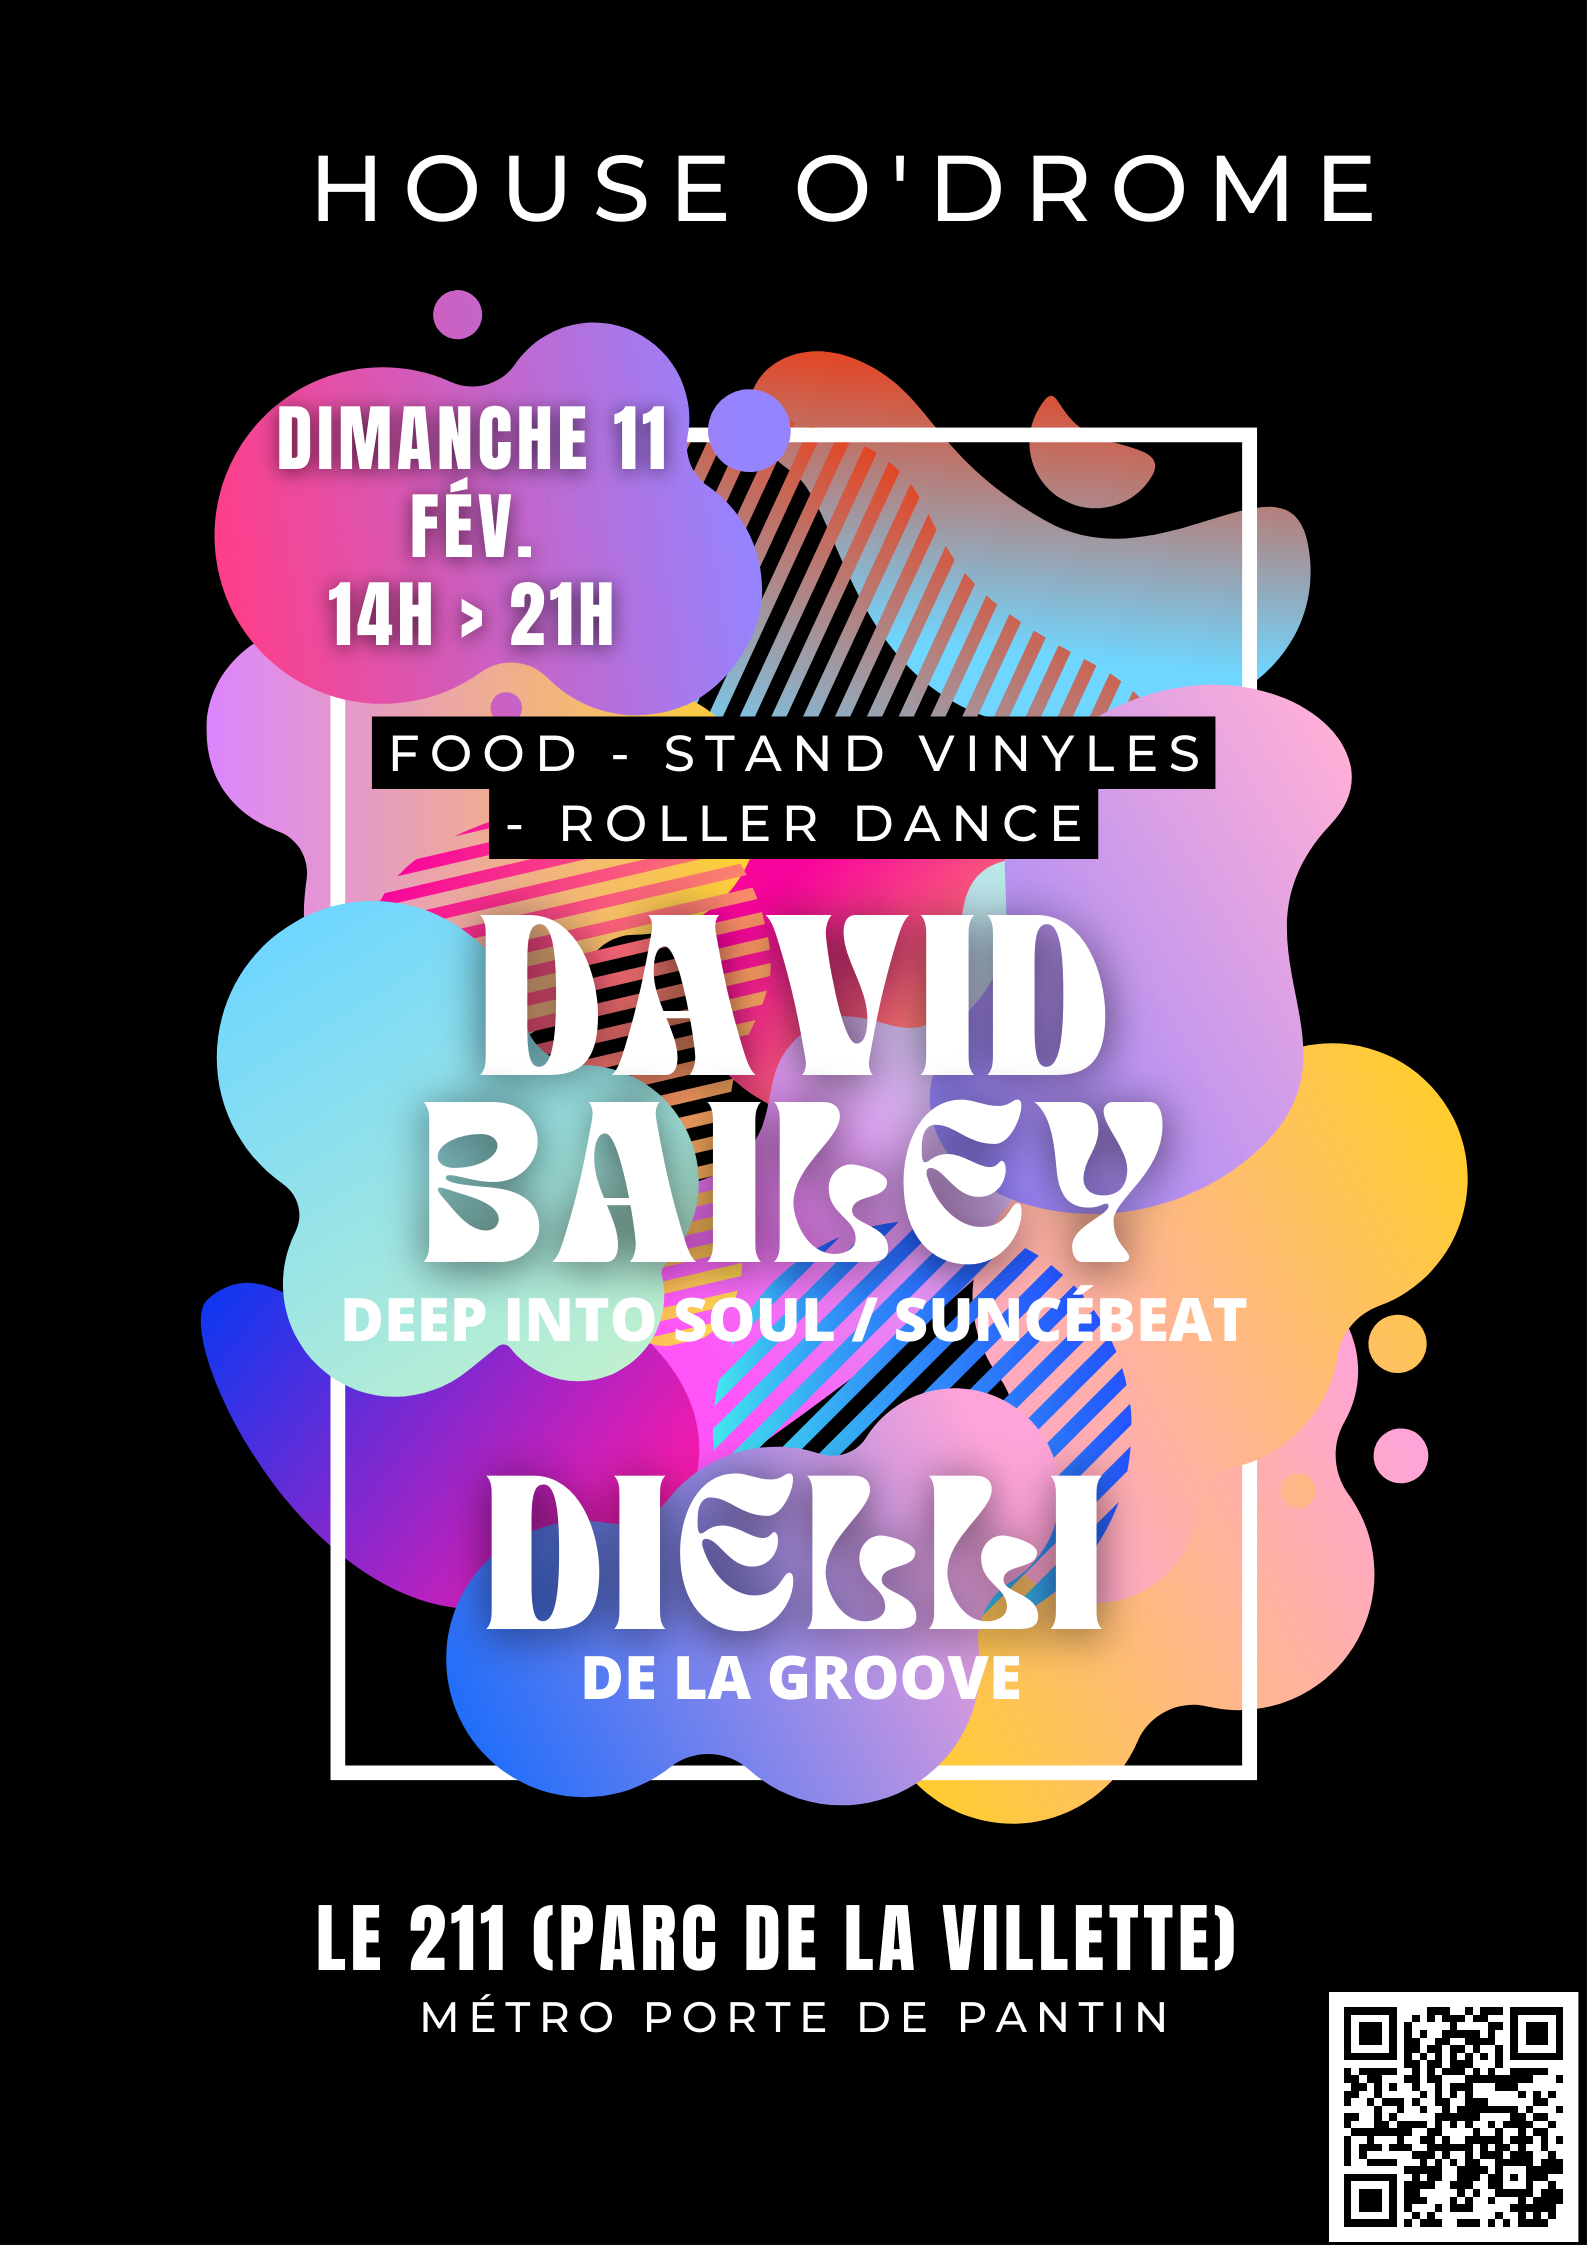 House O'Drome INVITE DAVID BAILEY (DEEP INTO SOUL/SUNCÉBEAT) & Dielli (DE LA GROOVE) - Página frontal